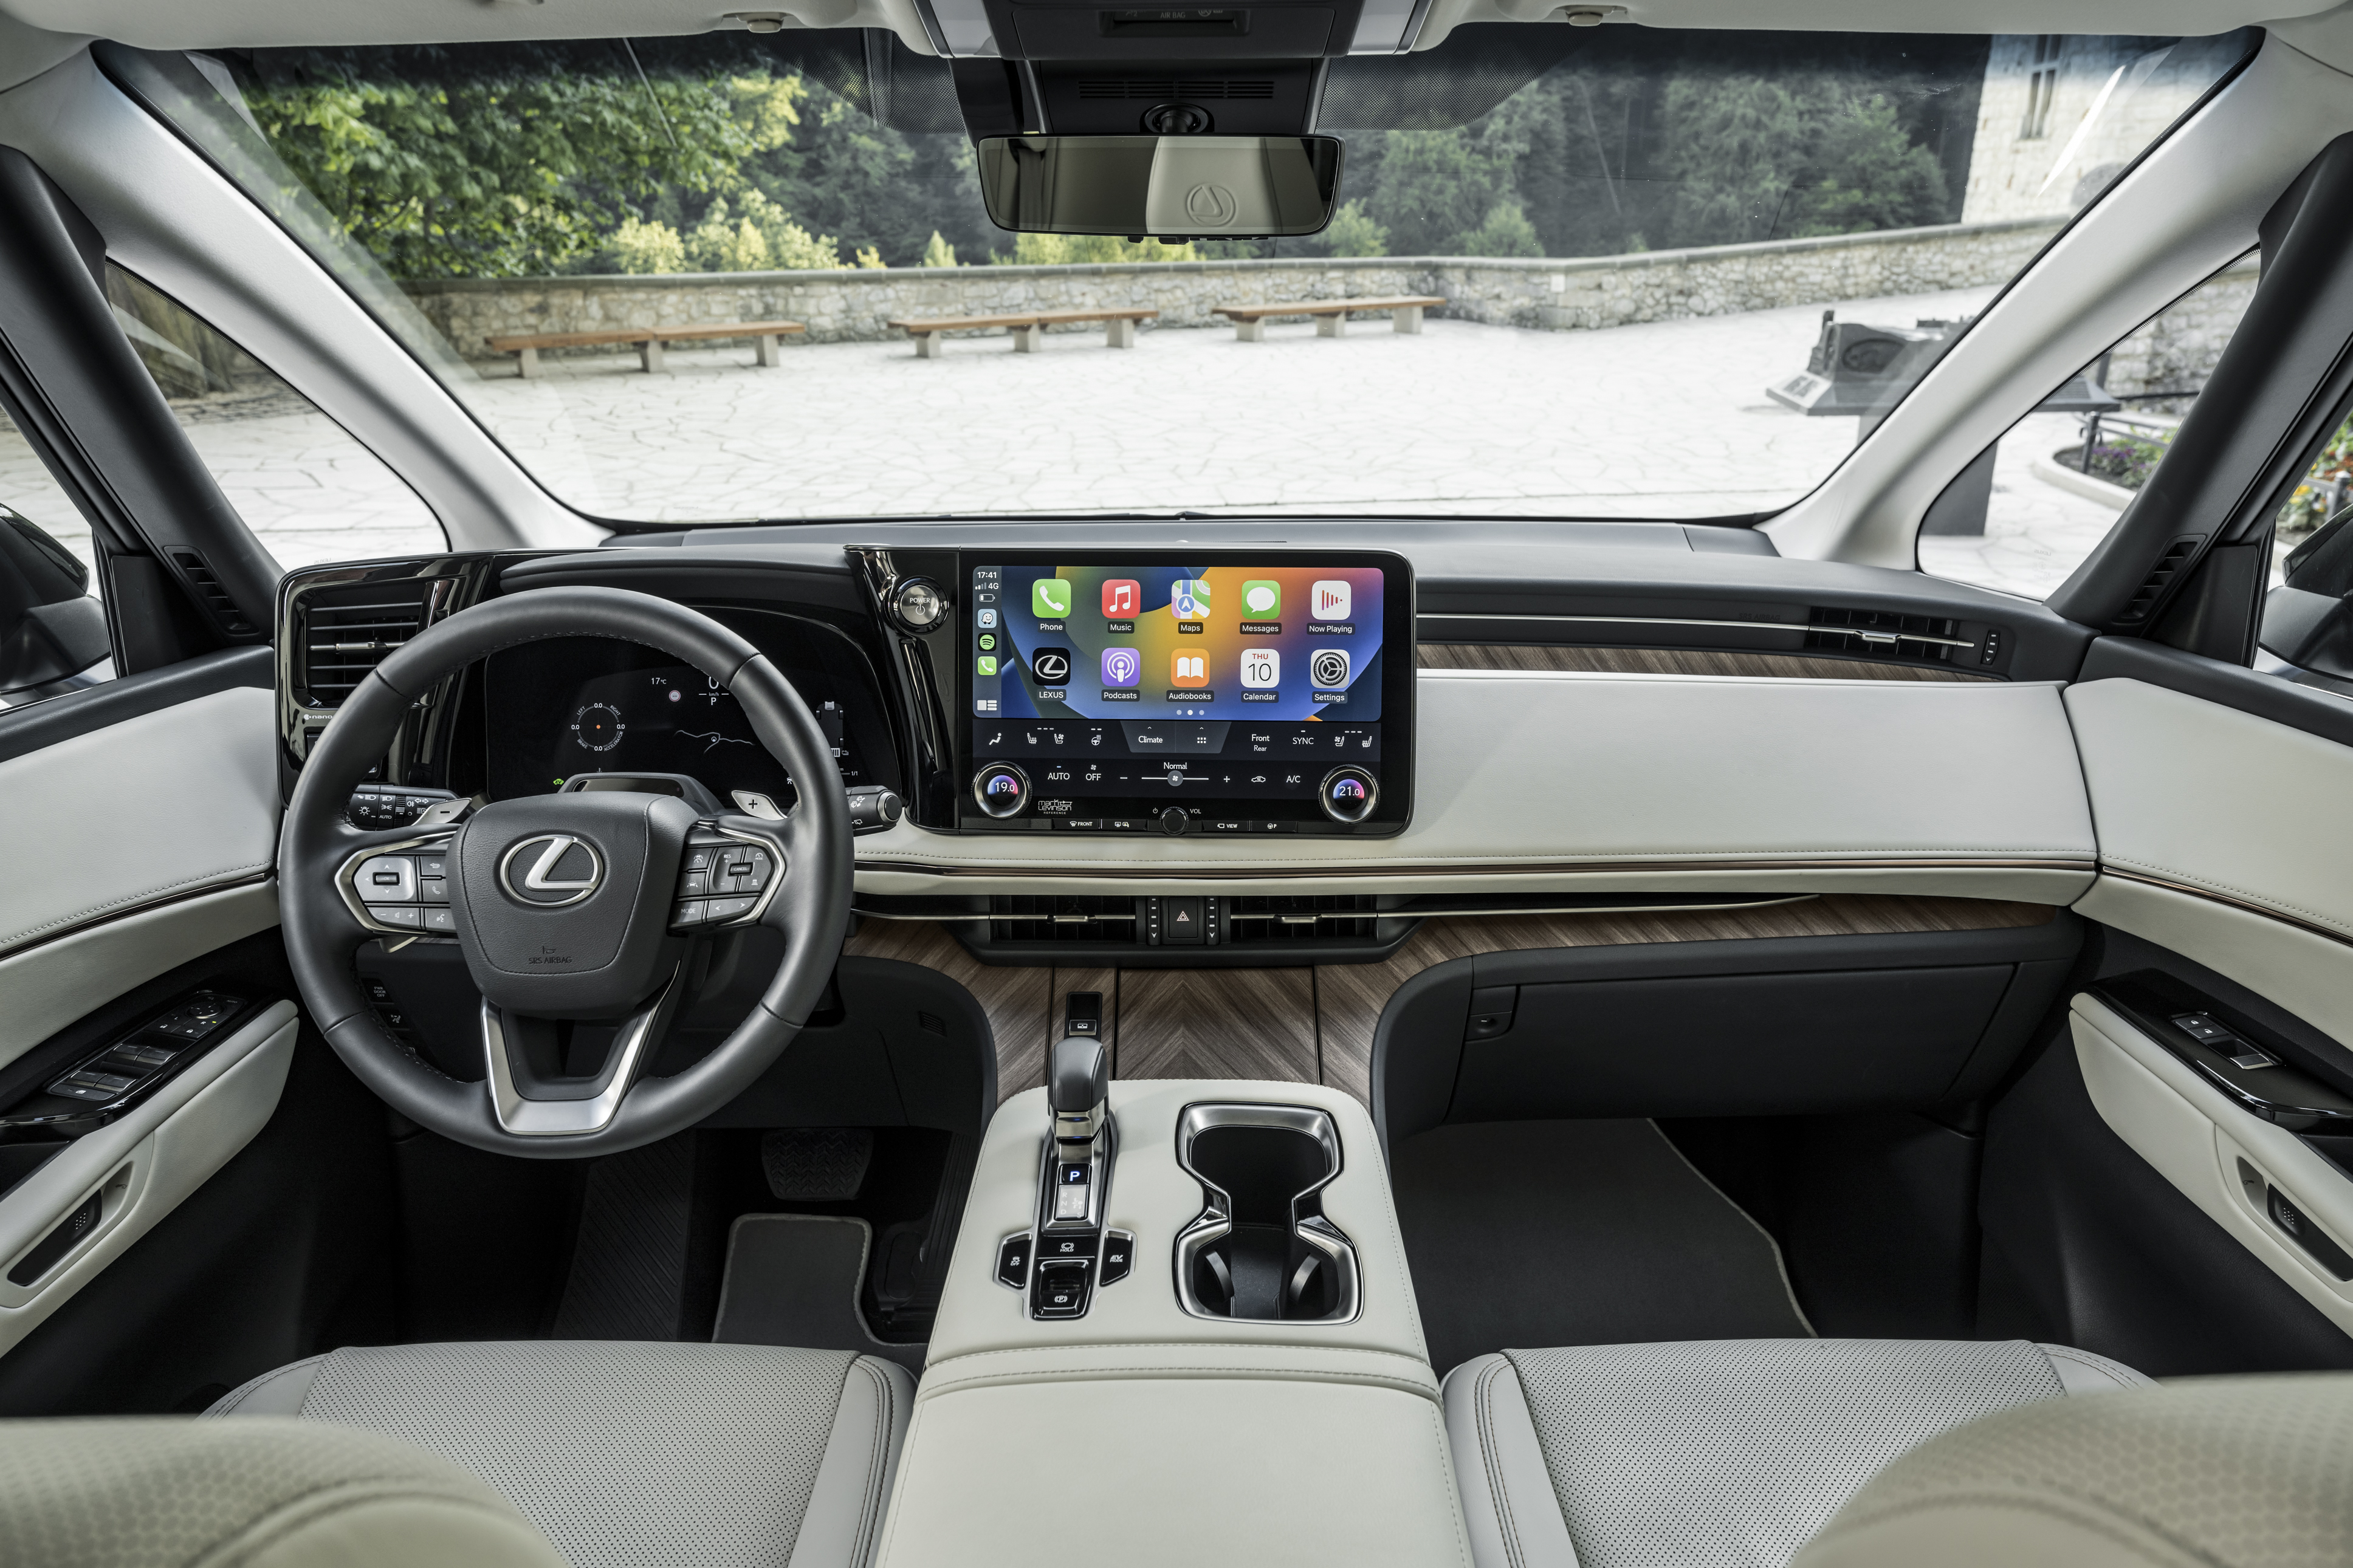 Lexus verbaut erstmals digitale Seitenspiegel in Serienfahrzeug